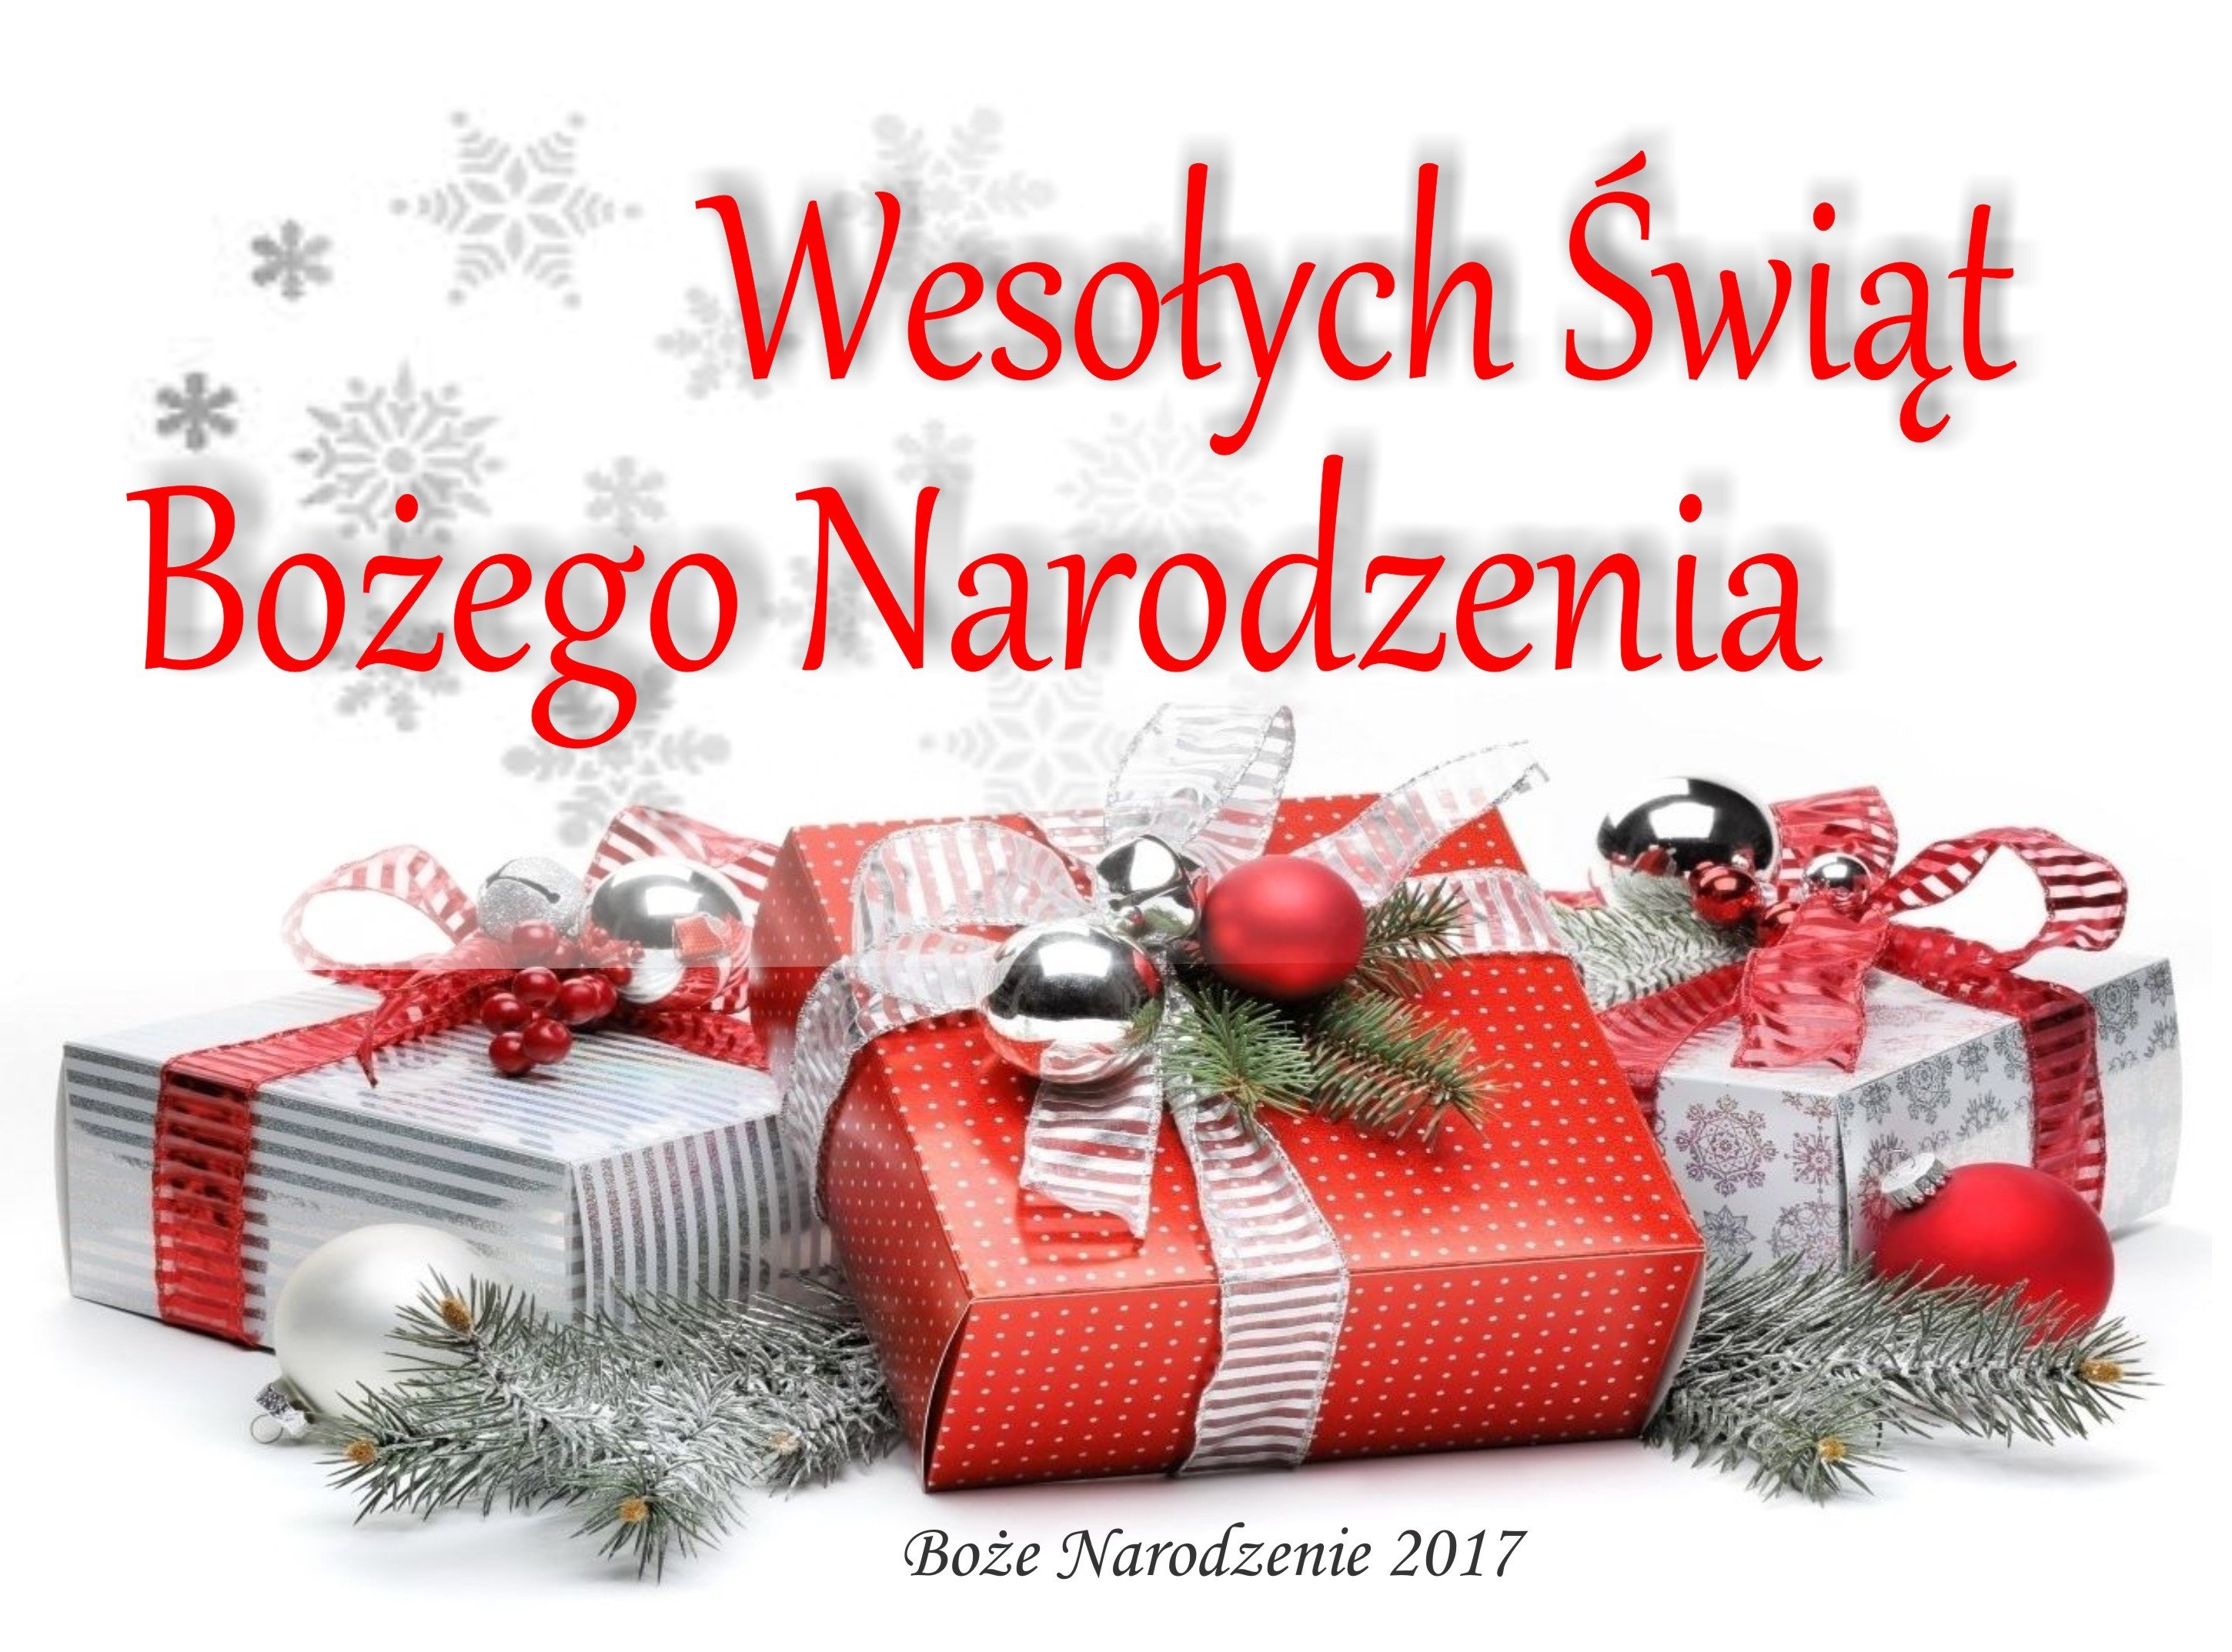 Новогодние поздравления от Русской службы Польского Радио